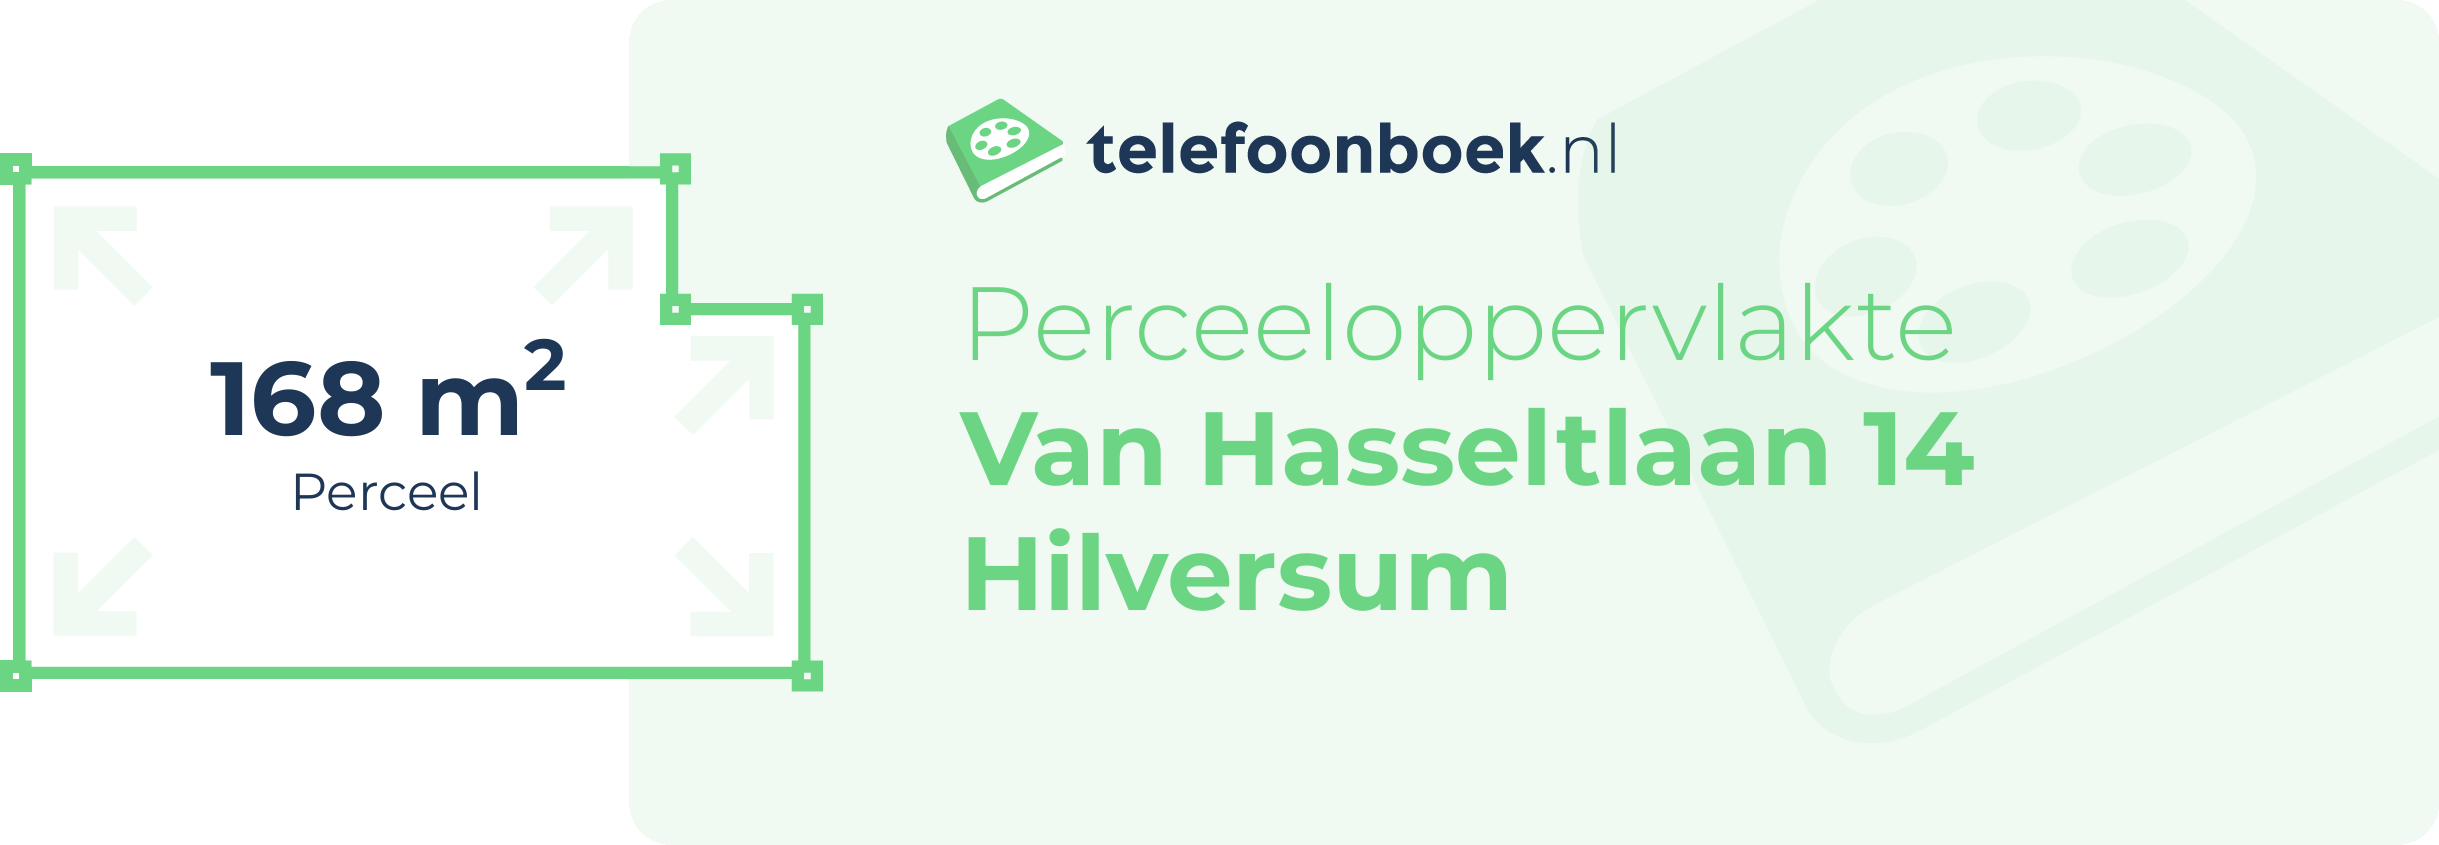 Perceeloppervlakte Van Hasseltlaan 14 Hilversum